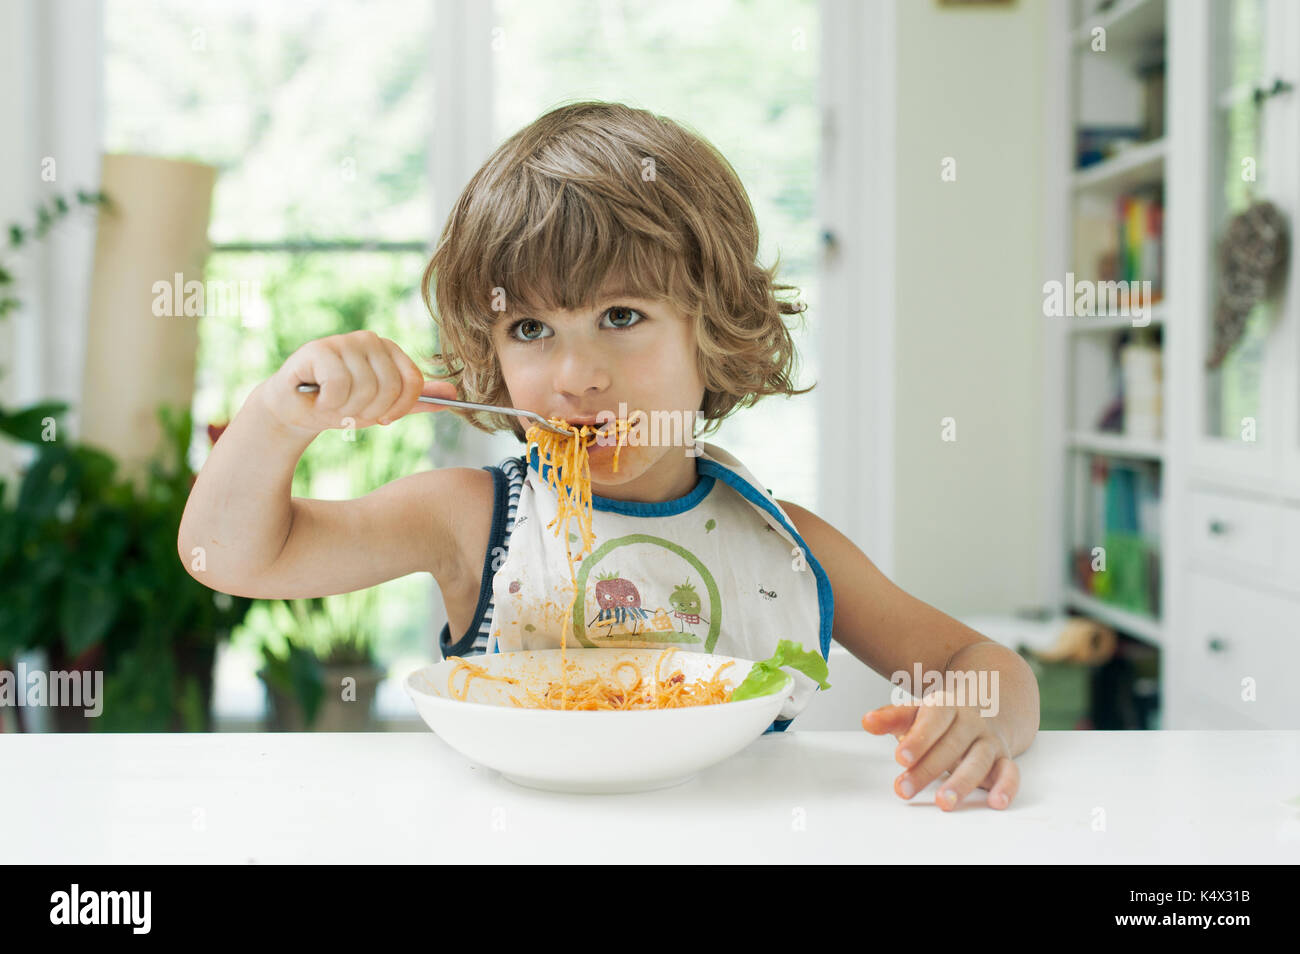 Retrato de un joven muchacho lindo haciendo un lío mientras comer pasta para el almuerzo Foto de stock